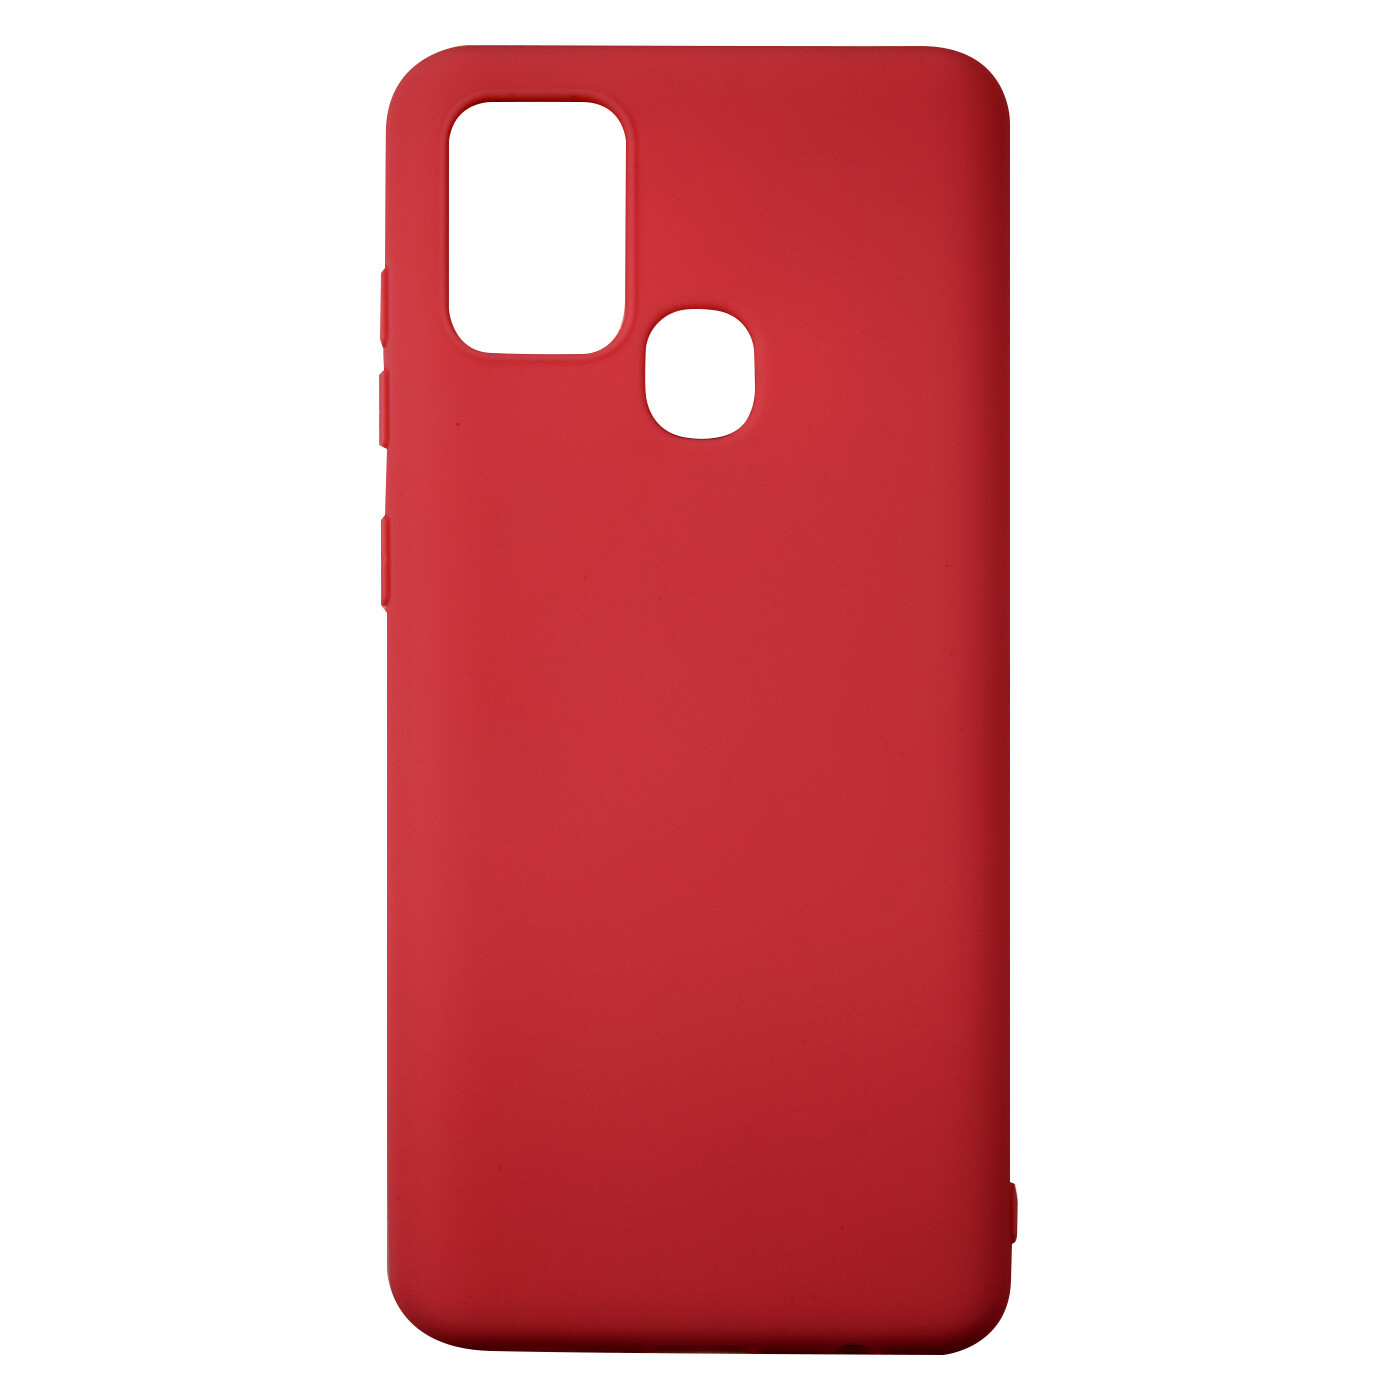 Чехол Red Line Ultimate силикон для Samsung A21s красный